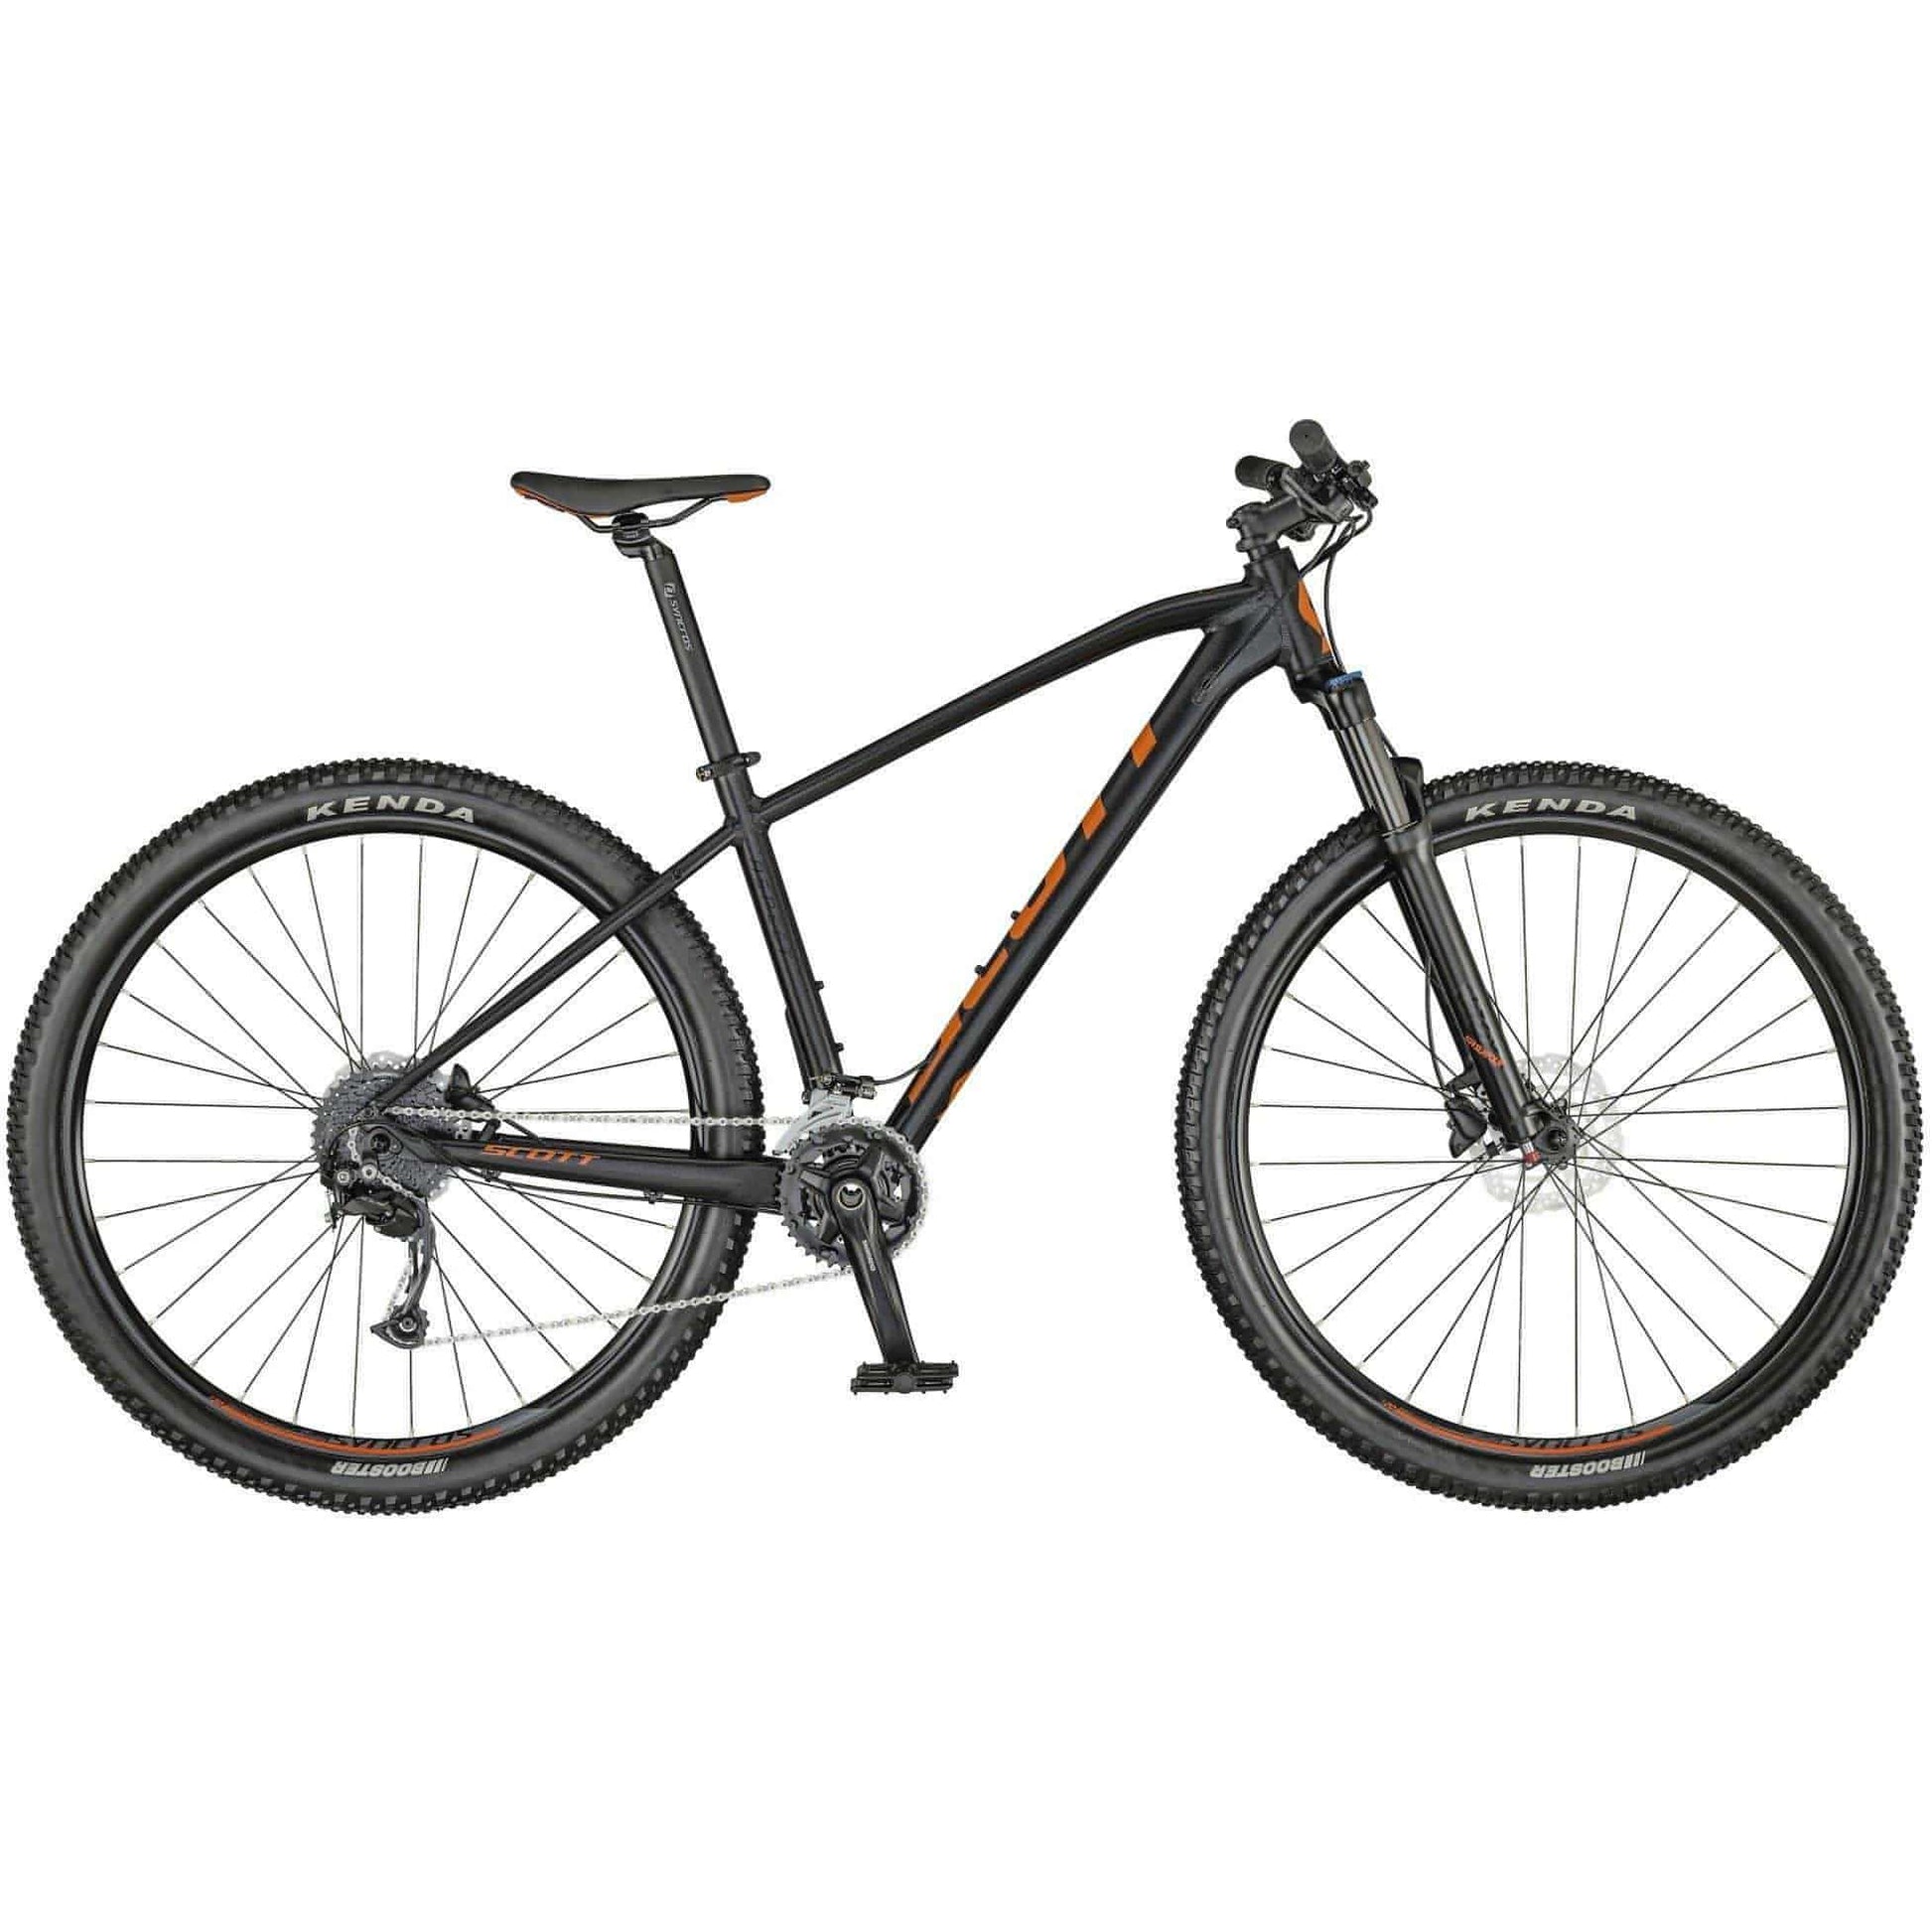 Scott Aspect 740 Mountain Bike 2021 - Black 7615523120154 - Start Fitness